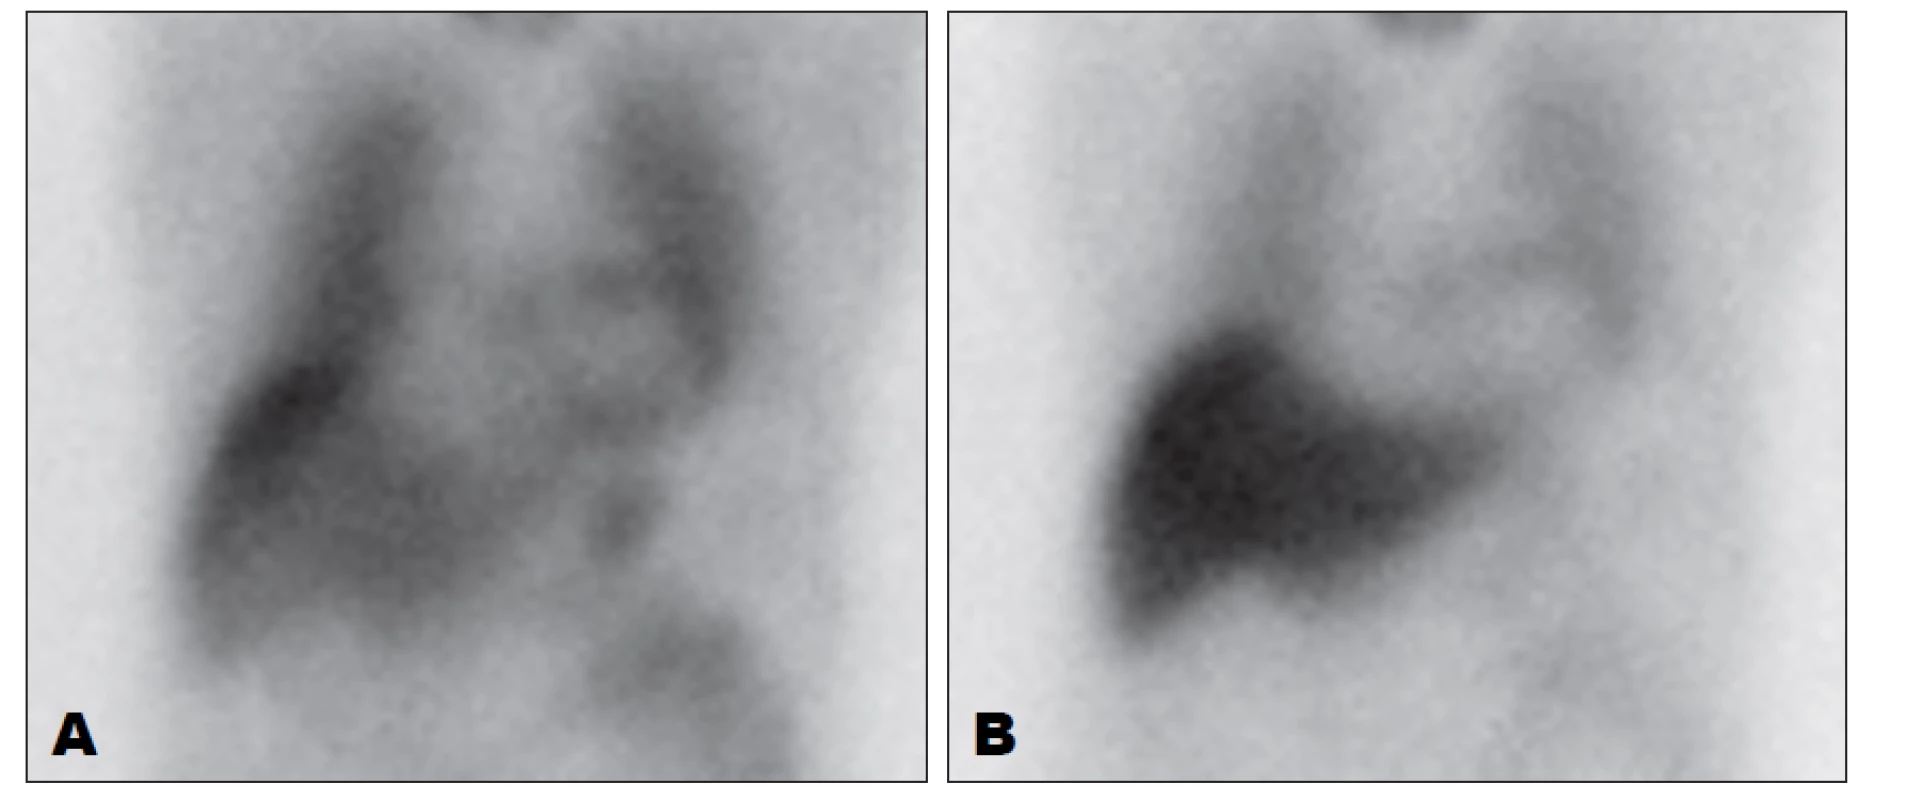 Zobrazení sympatické inervace myokardu pomocí 123I-MIBG, přední planární snímky hrudníku. Vlevo (A) je obraz 15 minut po aplikaci,
vpravo (B) 4 hodiny po aplikaci. Je patrná nízká akumulace MIBG při autonomní neuropatii.